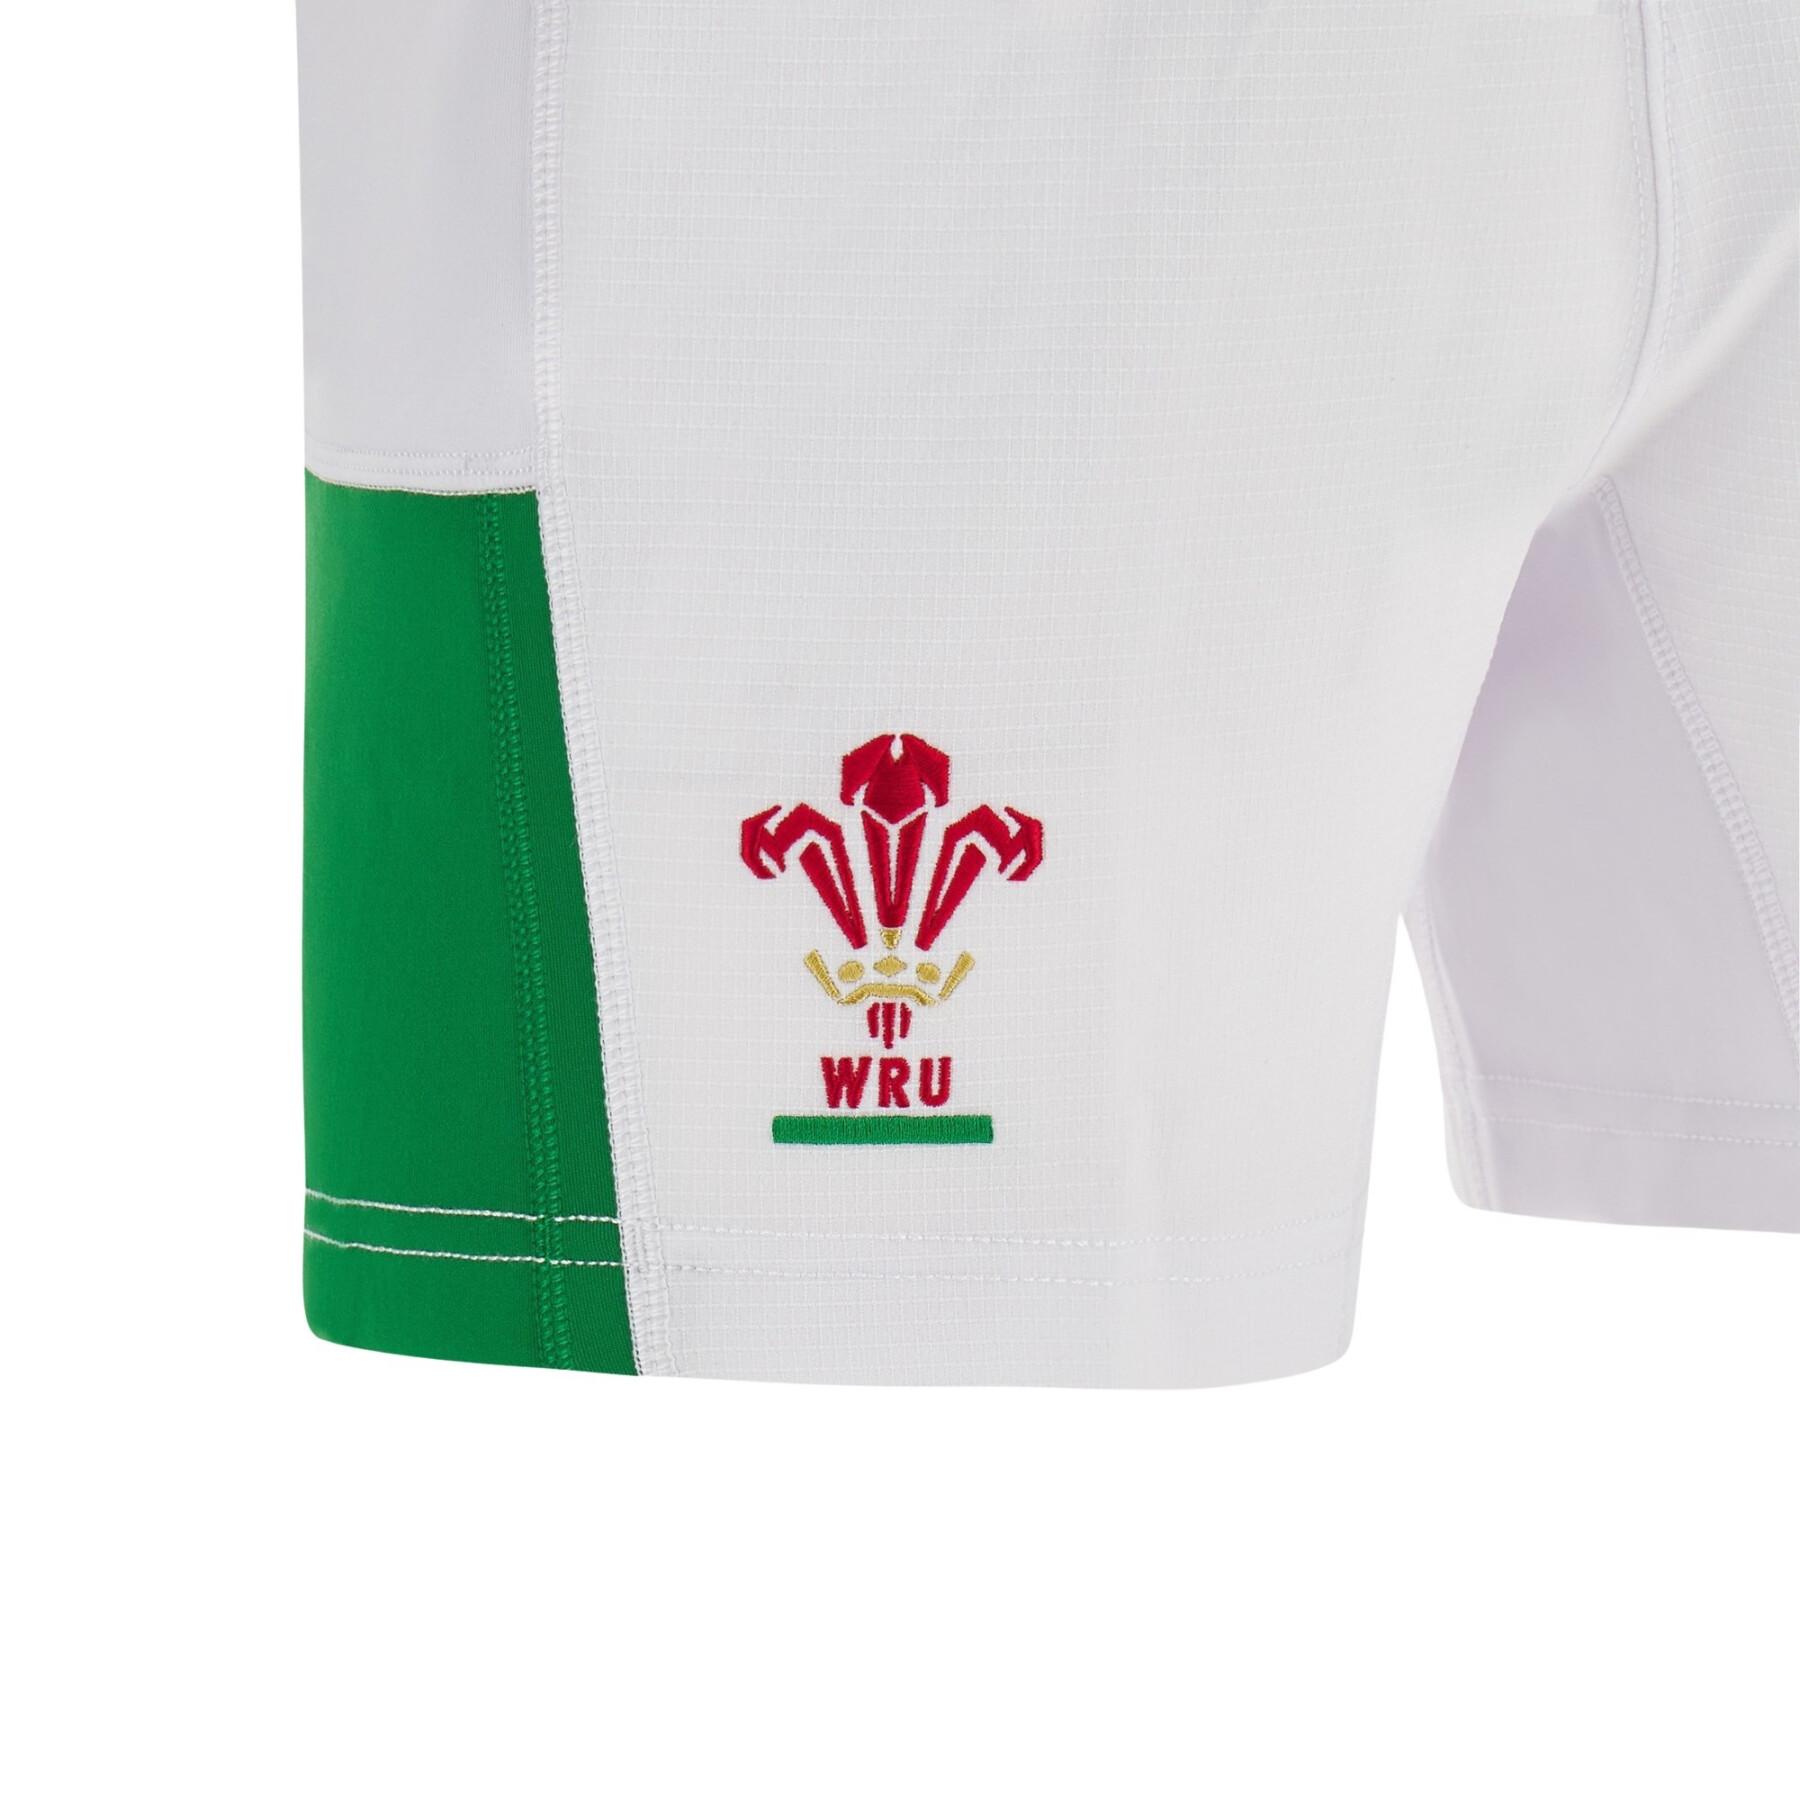 Pantalones cortos primera equipación País de Galles Rugby XV Pathway 2023